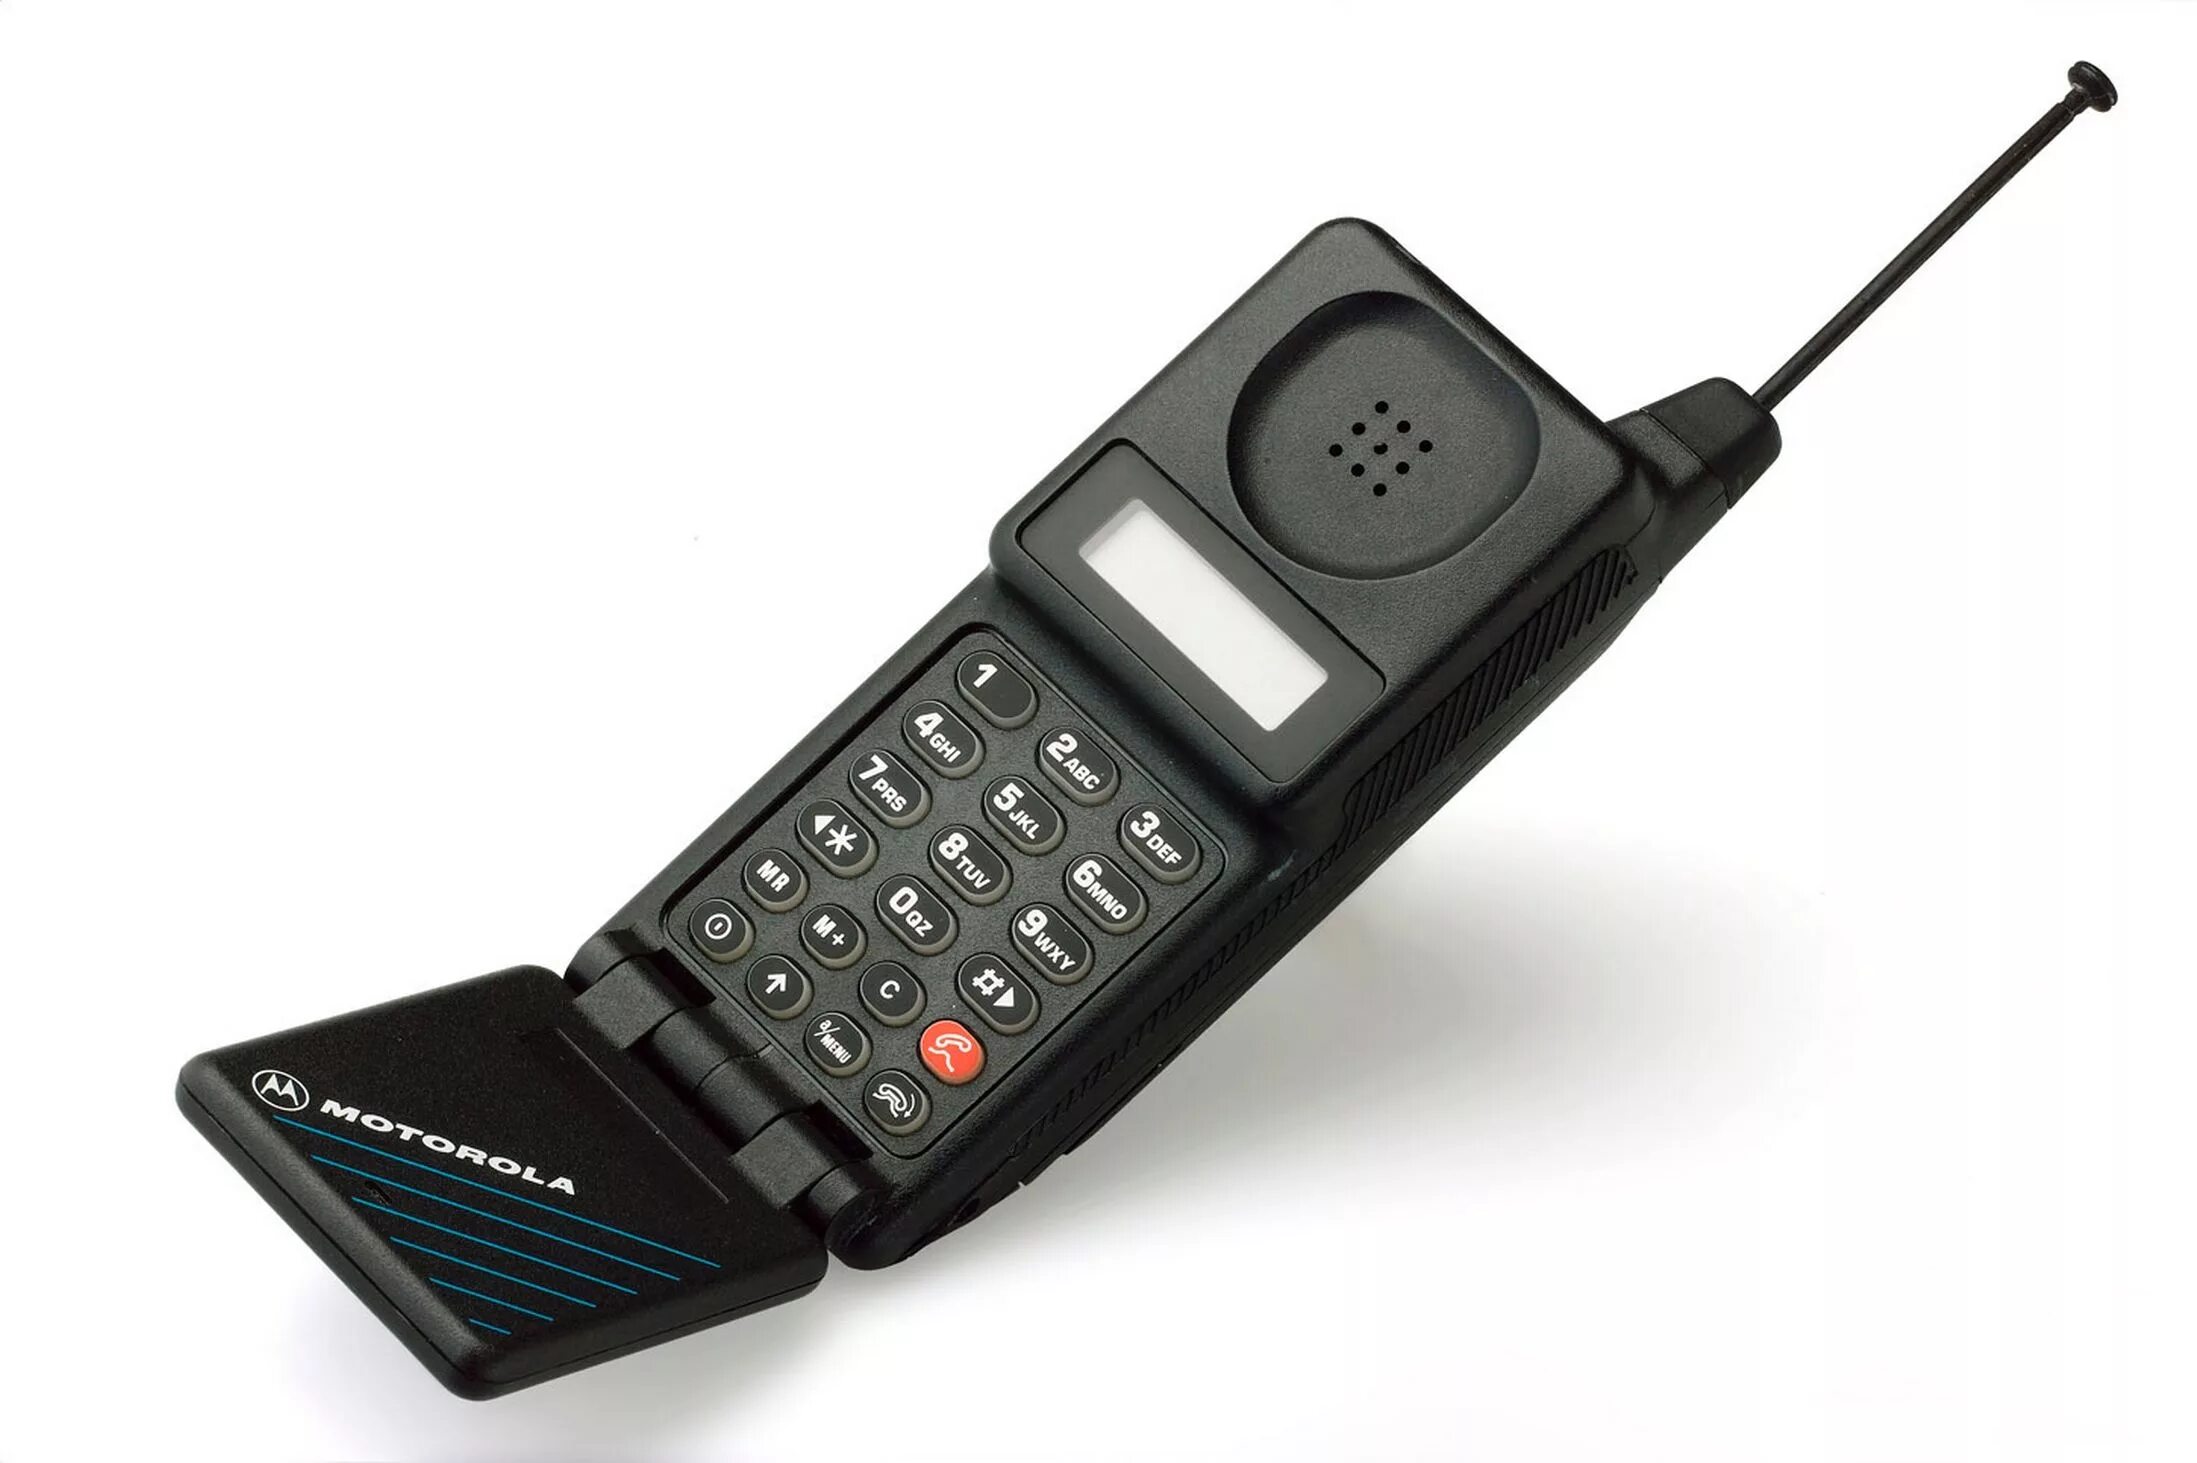 Мобильные телефоны 90. Motorola MICROTAC 9800x. Моторола микротак 9800. Motorola 1989. Motorola MICROTAC 1989.